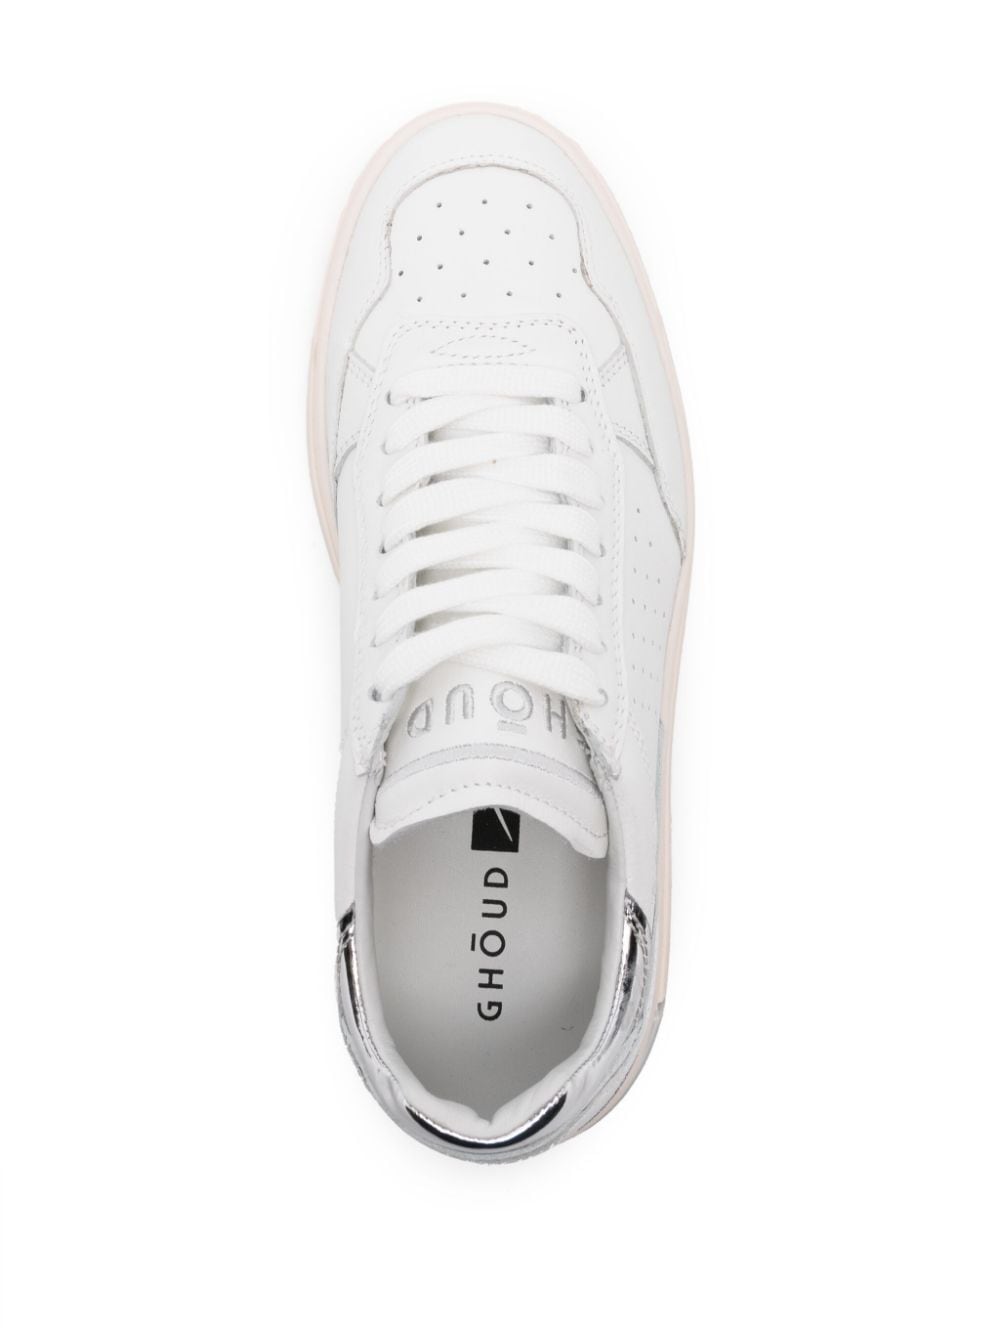 GHŌUD Tweener leather sneakers White